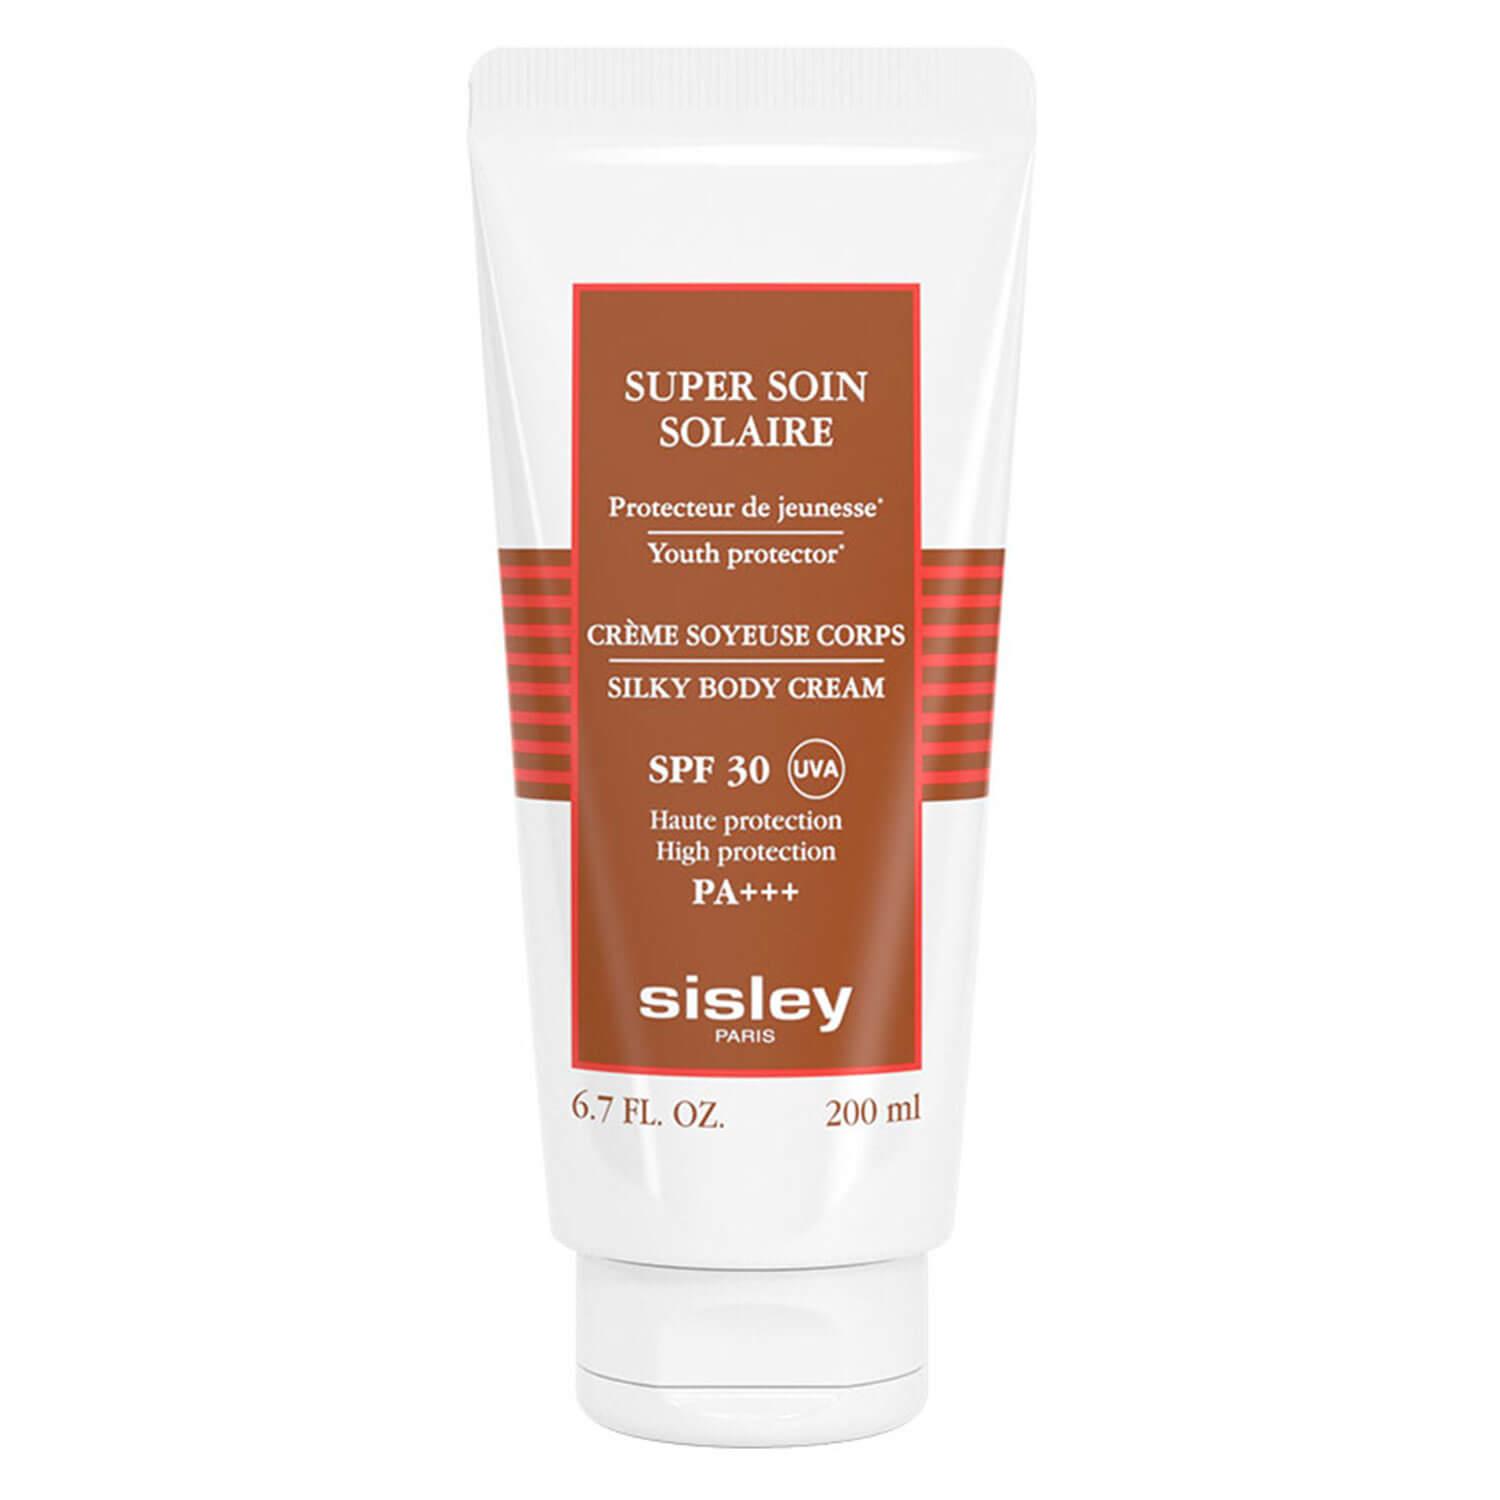 Super Soin - Solaire Silky Body Cream SPF30